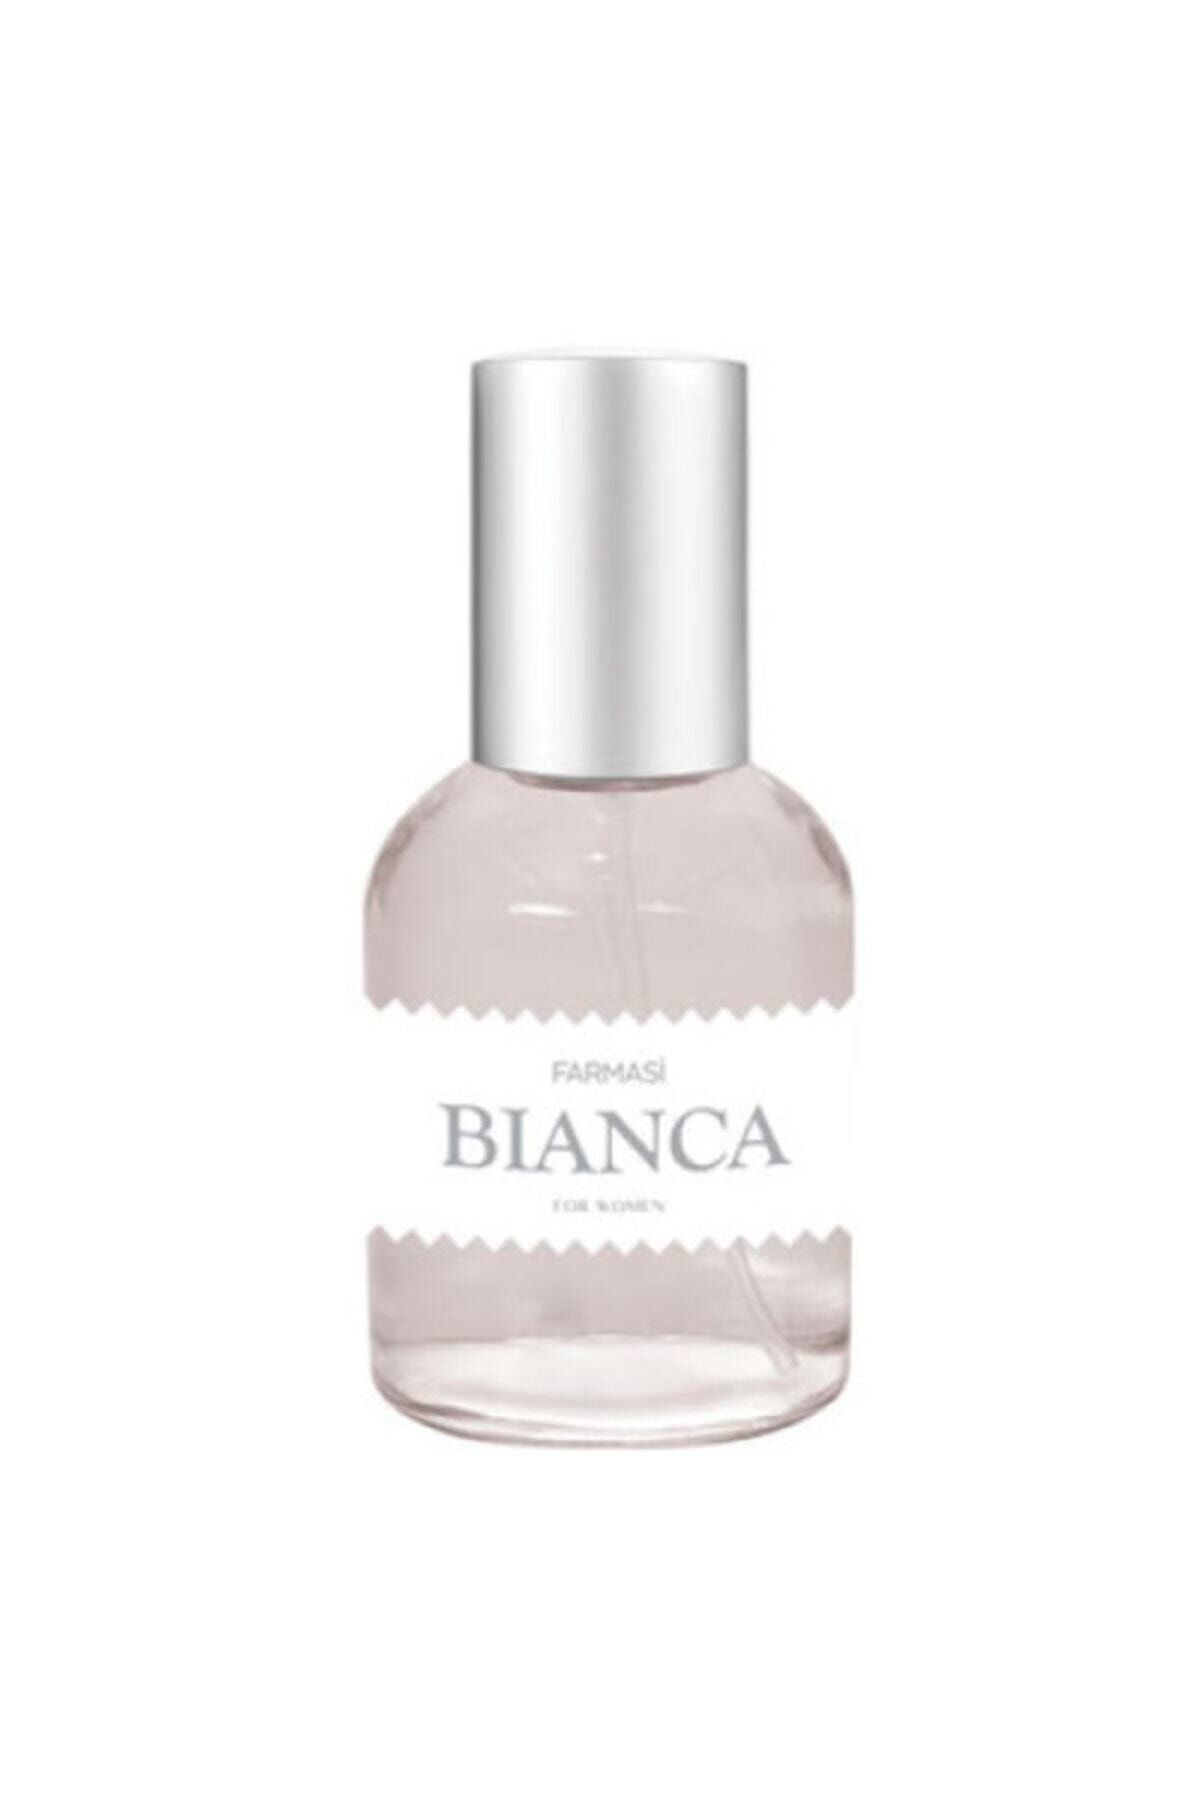 Farmasi Bianca Edp 50 ml Kadın Parfüm 2687964510283 11074993